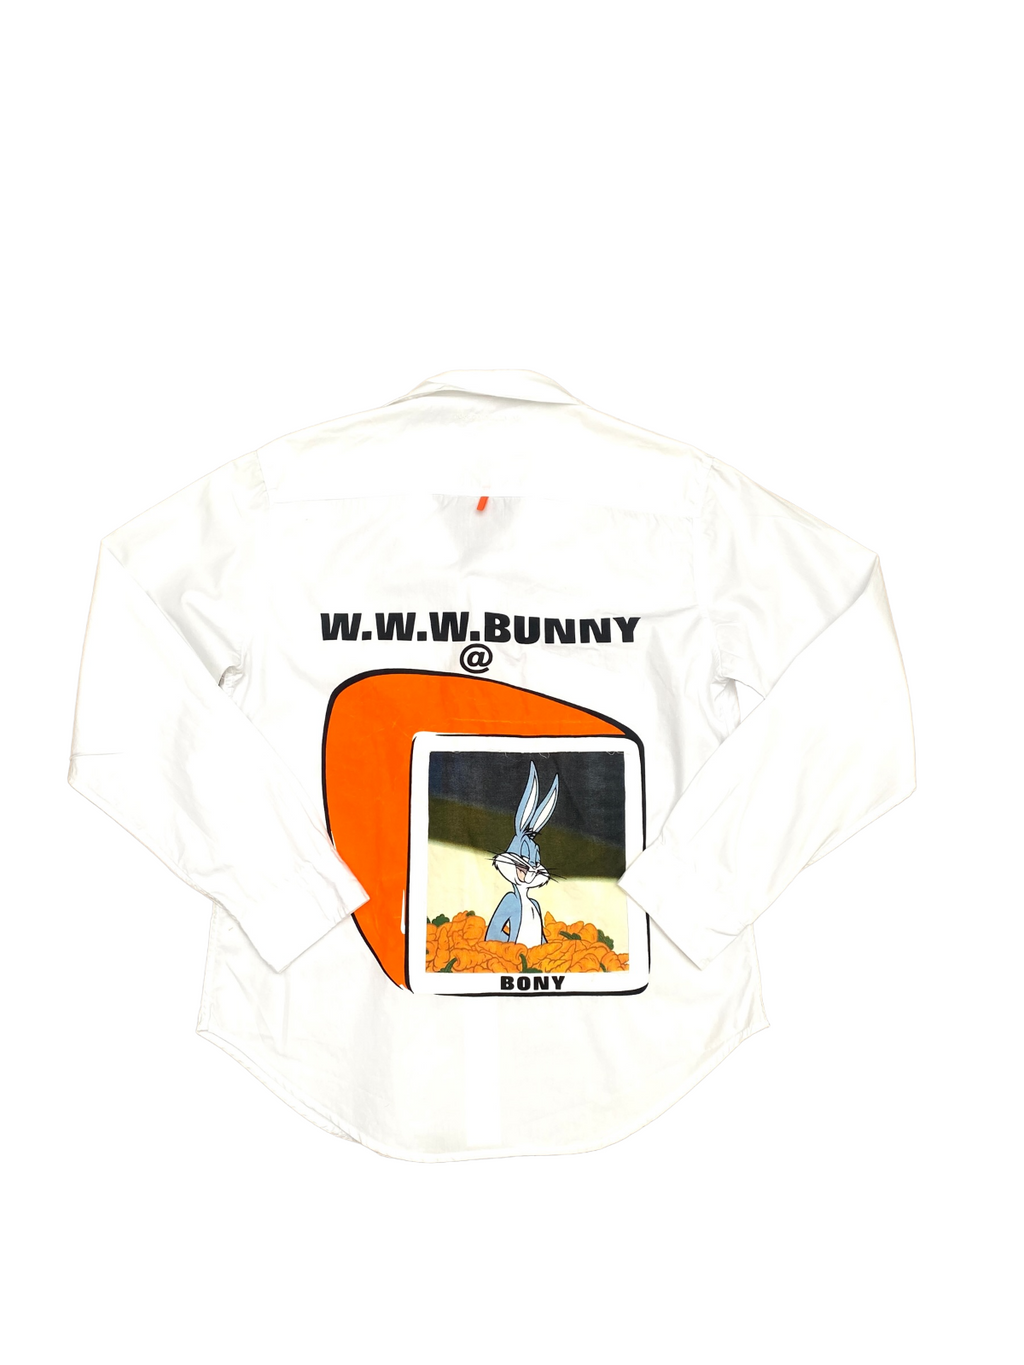 Rare Bugs Bunny Shirt